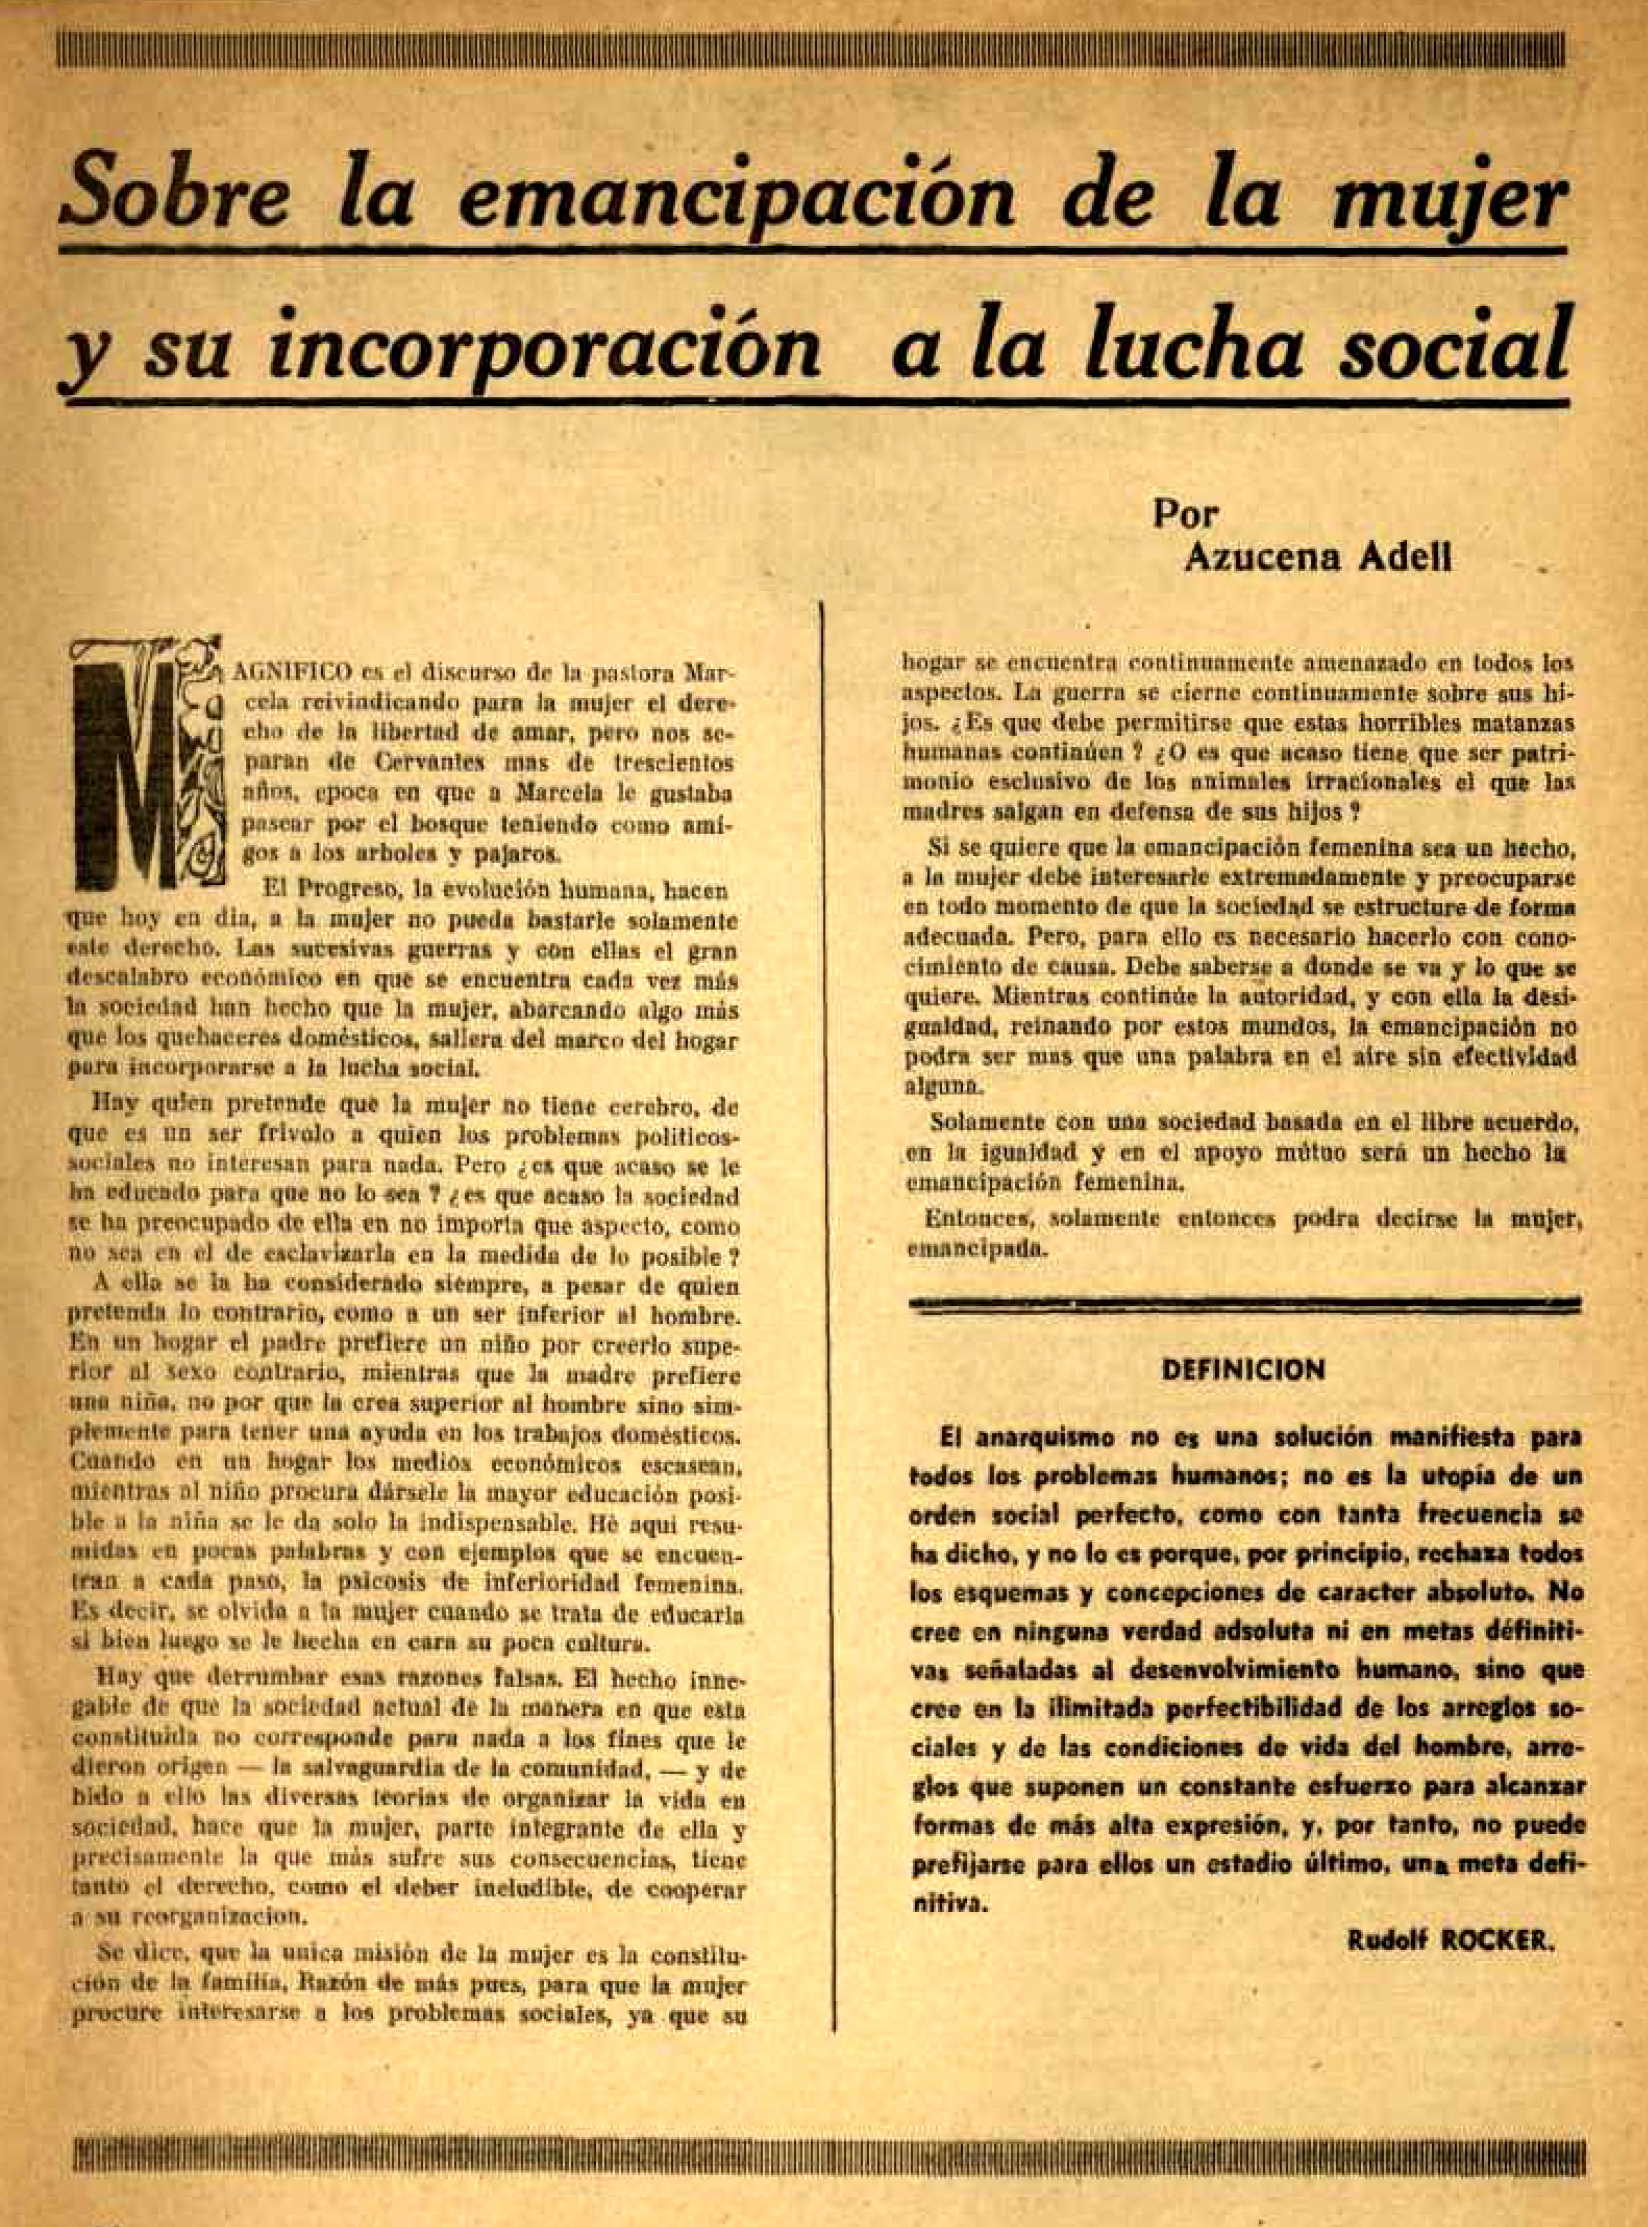 Article d'Azucena Adell Surinach publicat en la revista de Bordeus "Inquietudes" de novembre-desembre de 1947